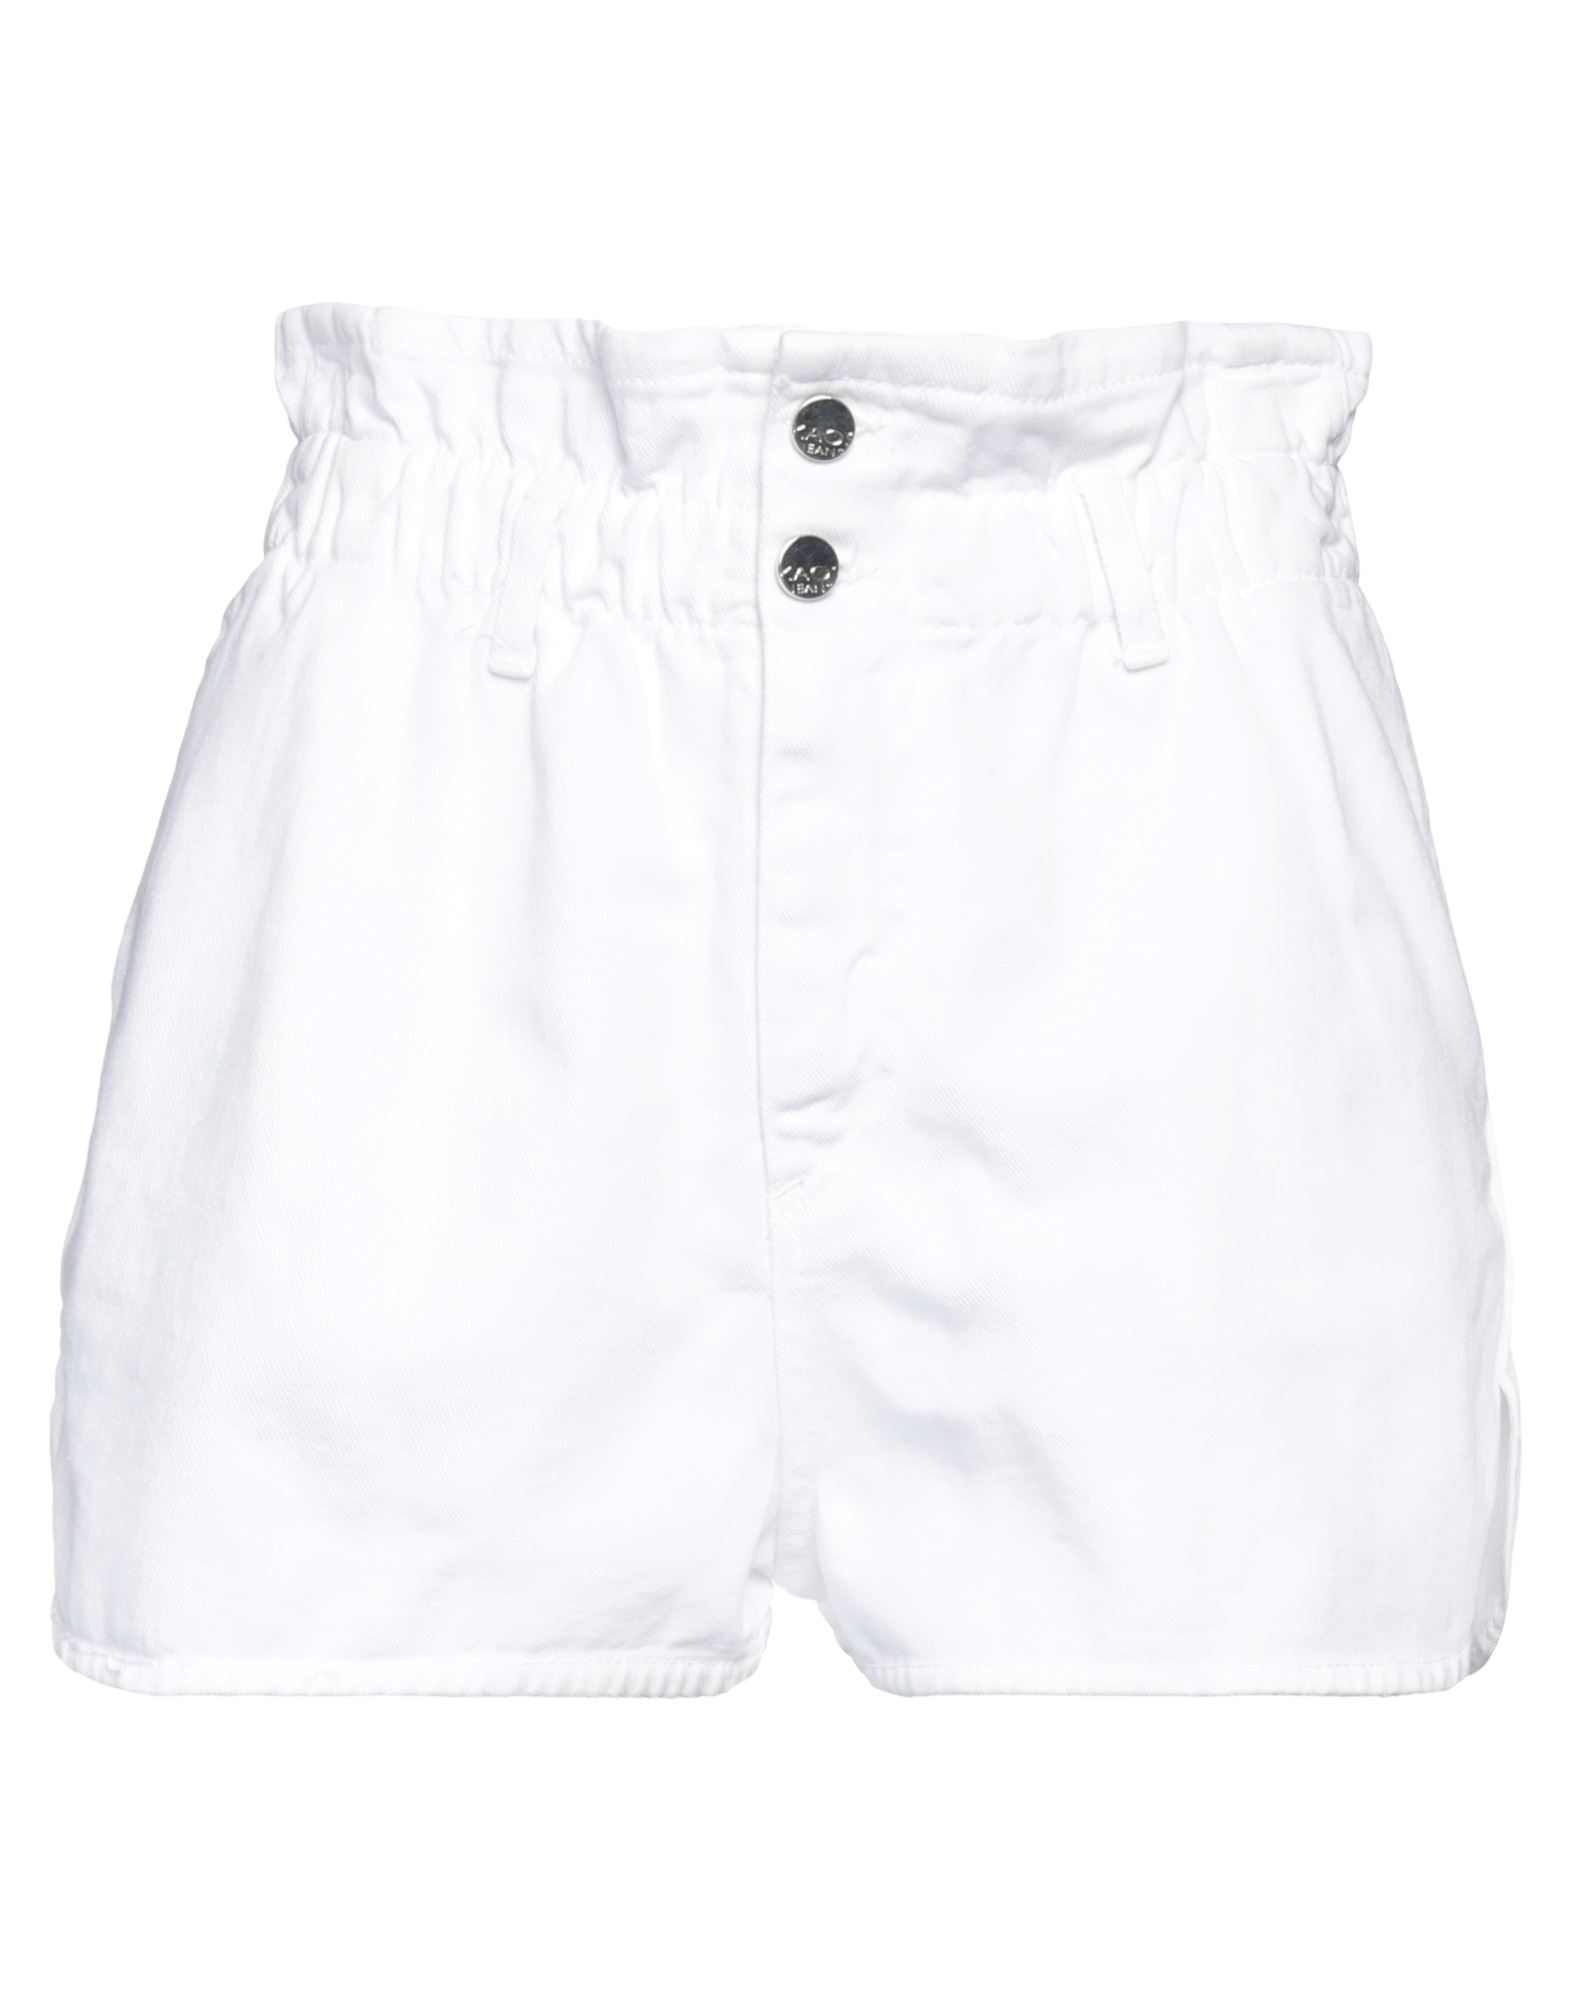 Shop Kaos Jeans Woman Denim Shorts White Size 29 Cotton